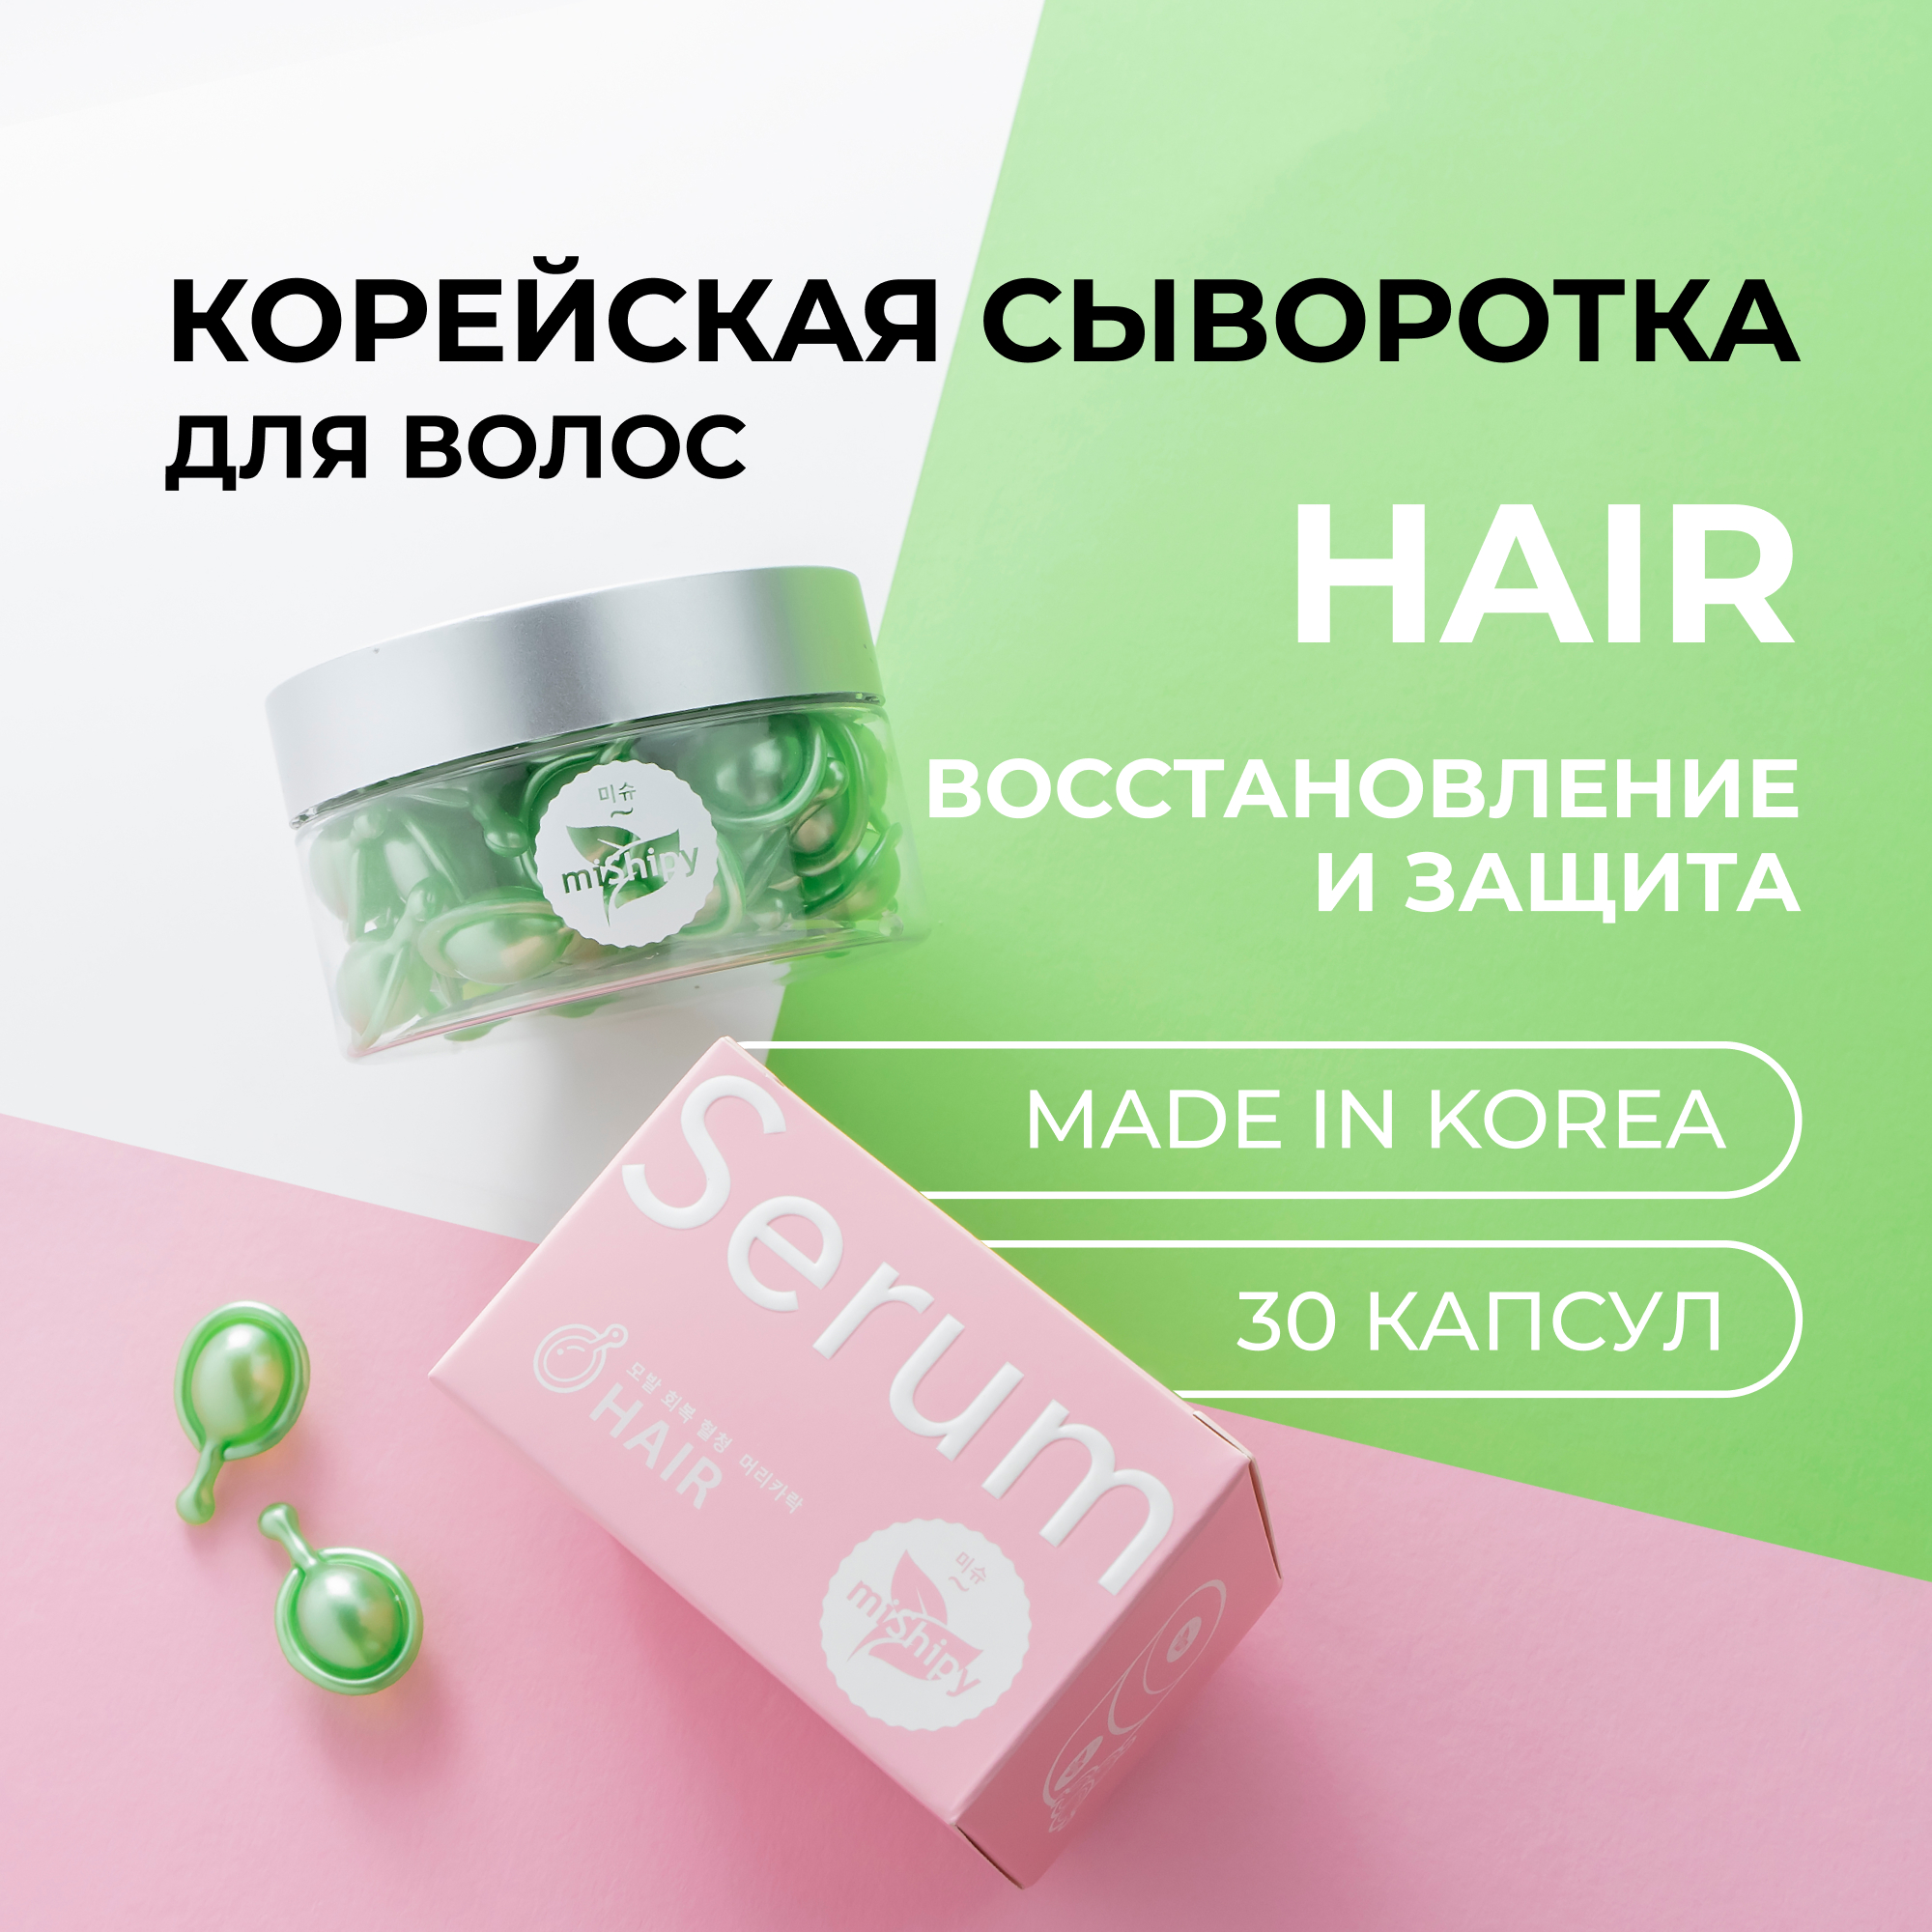 Сыворотка miShipy для волос Hair восстанавливающее масло для волос 30 капсул веторил 10 мг 30 капсул